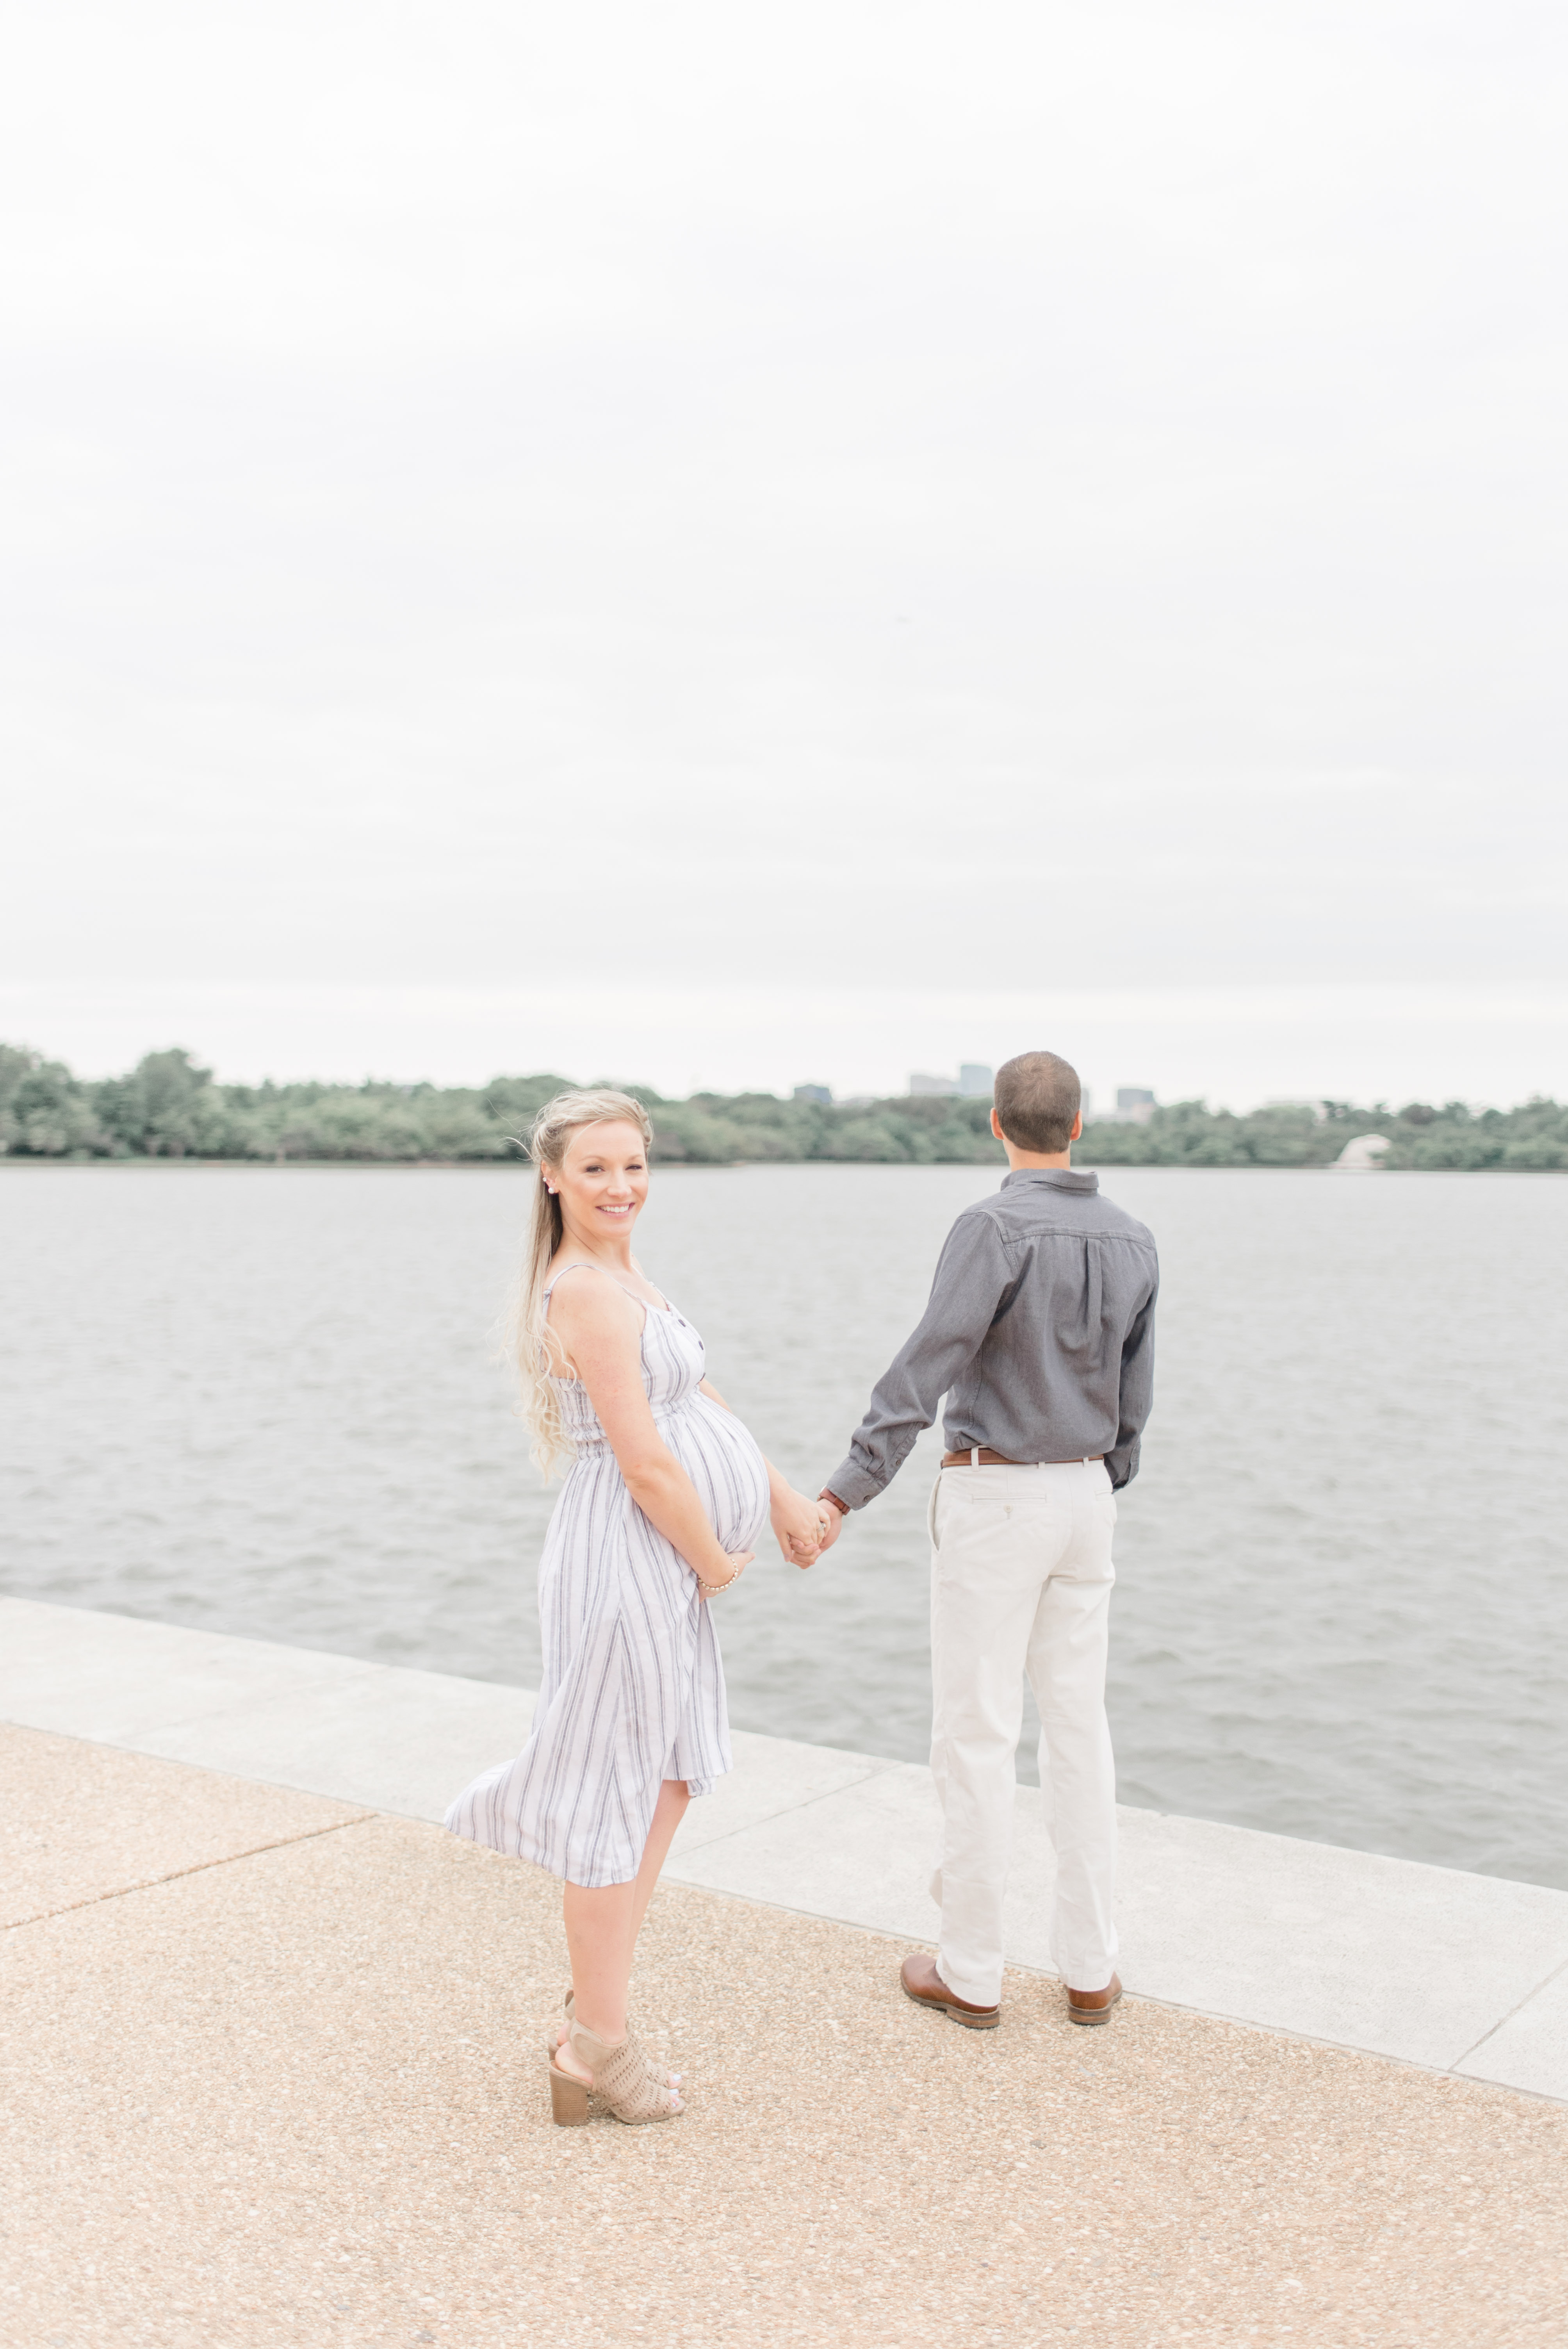 Maternity photos taken at the Thomas Jefferson Memorial in Washington DC